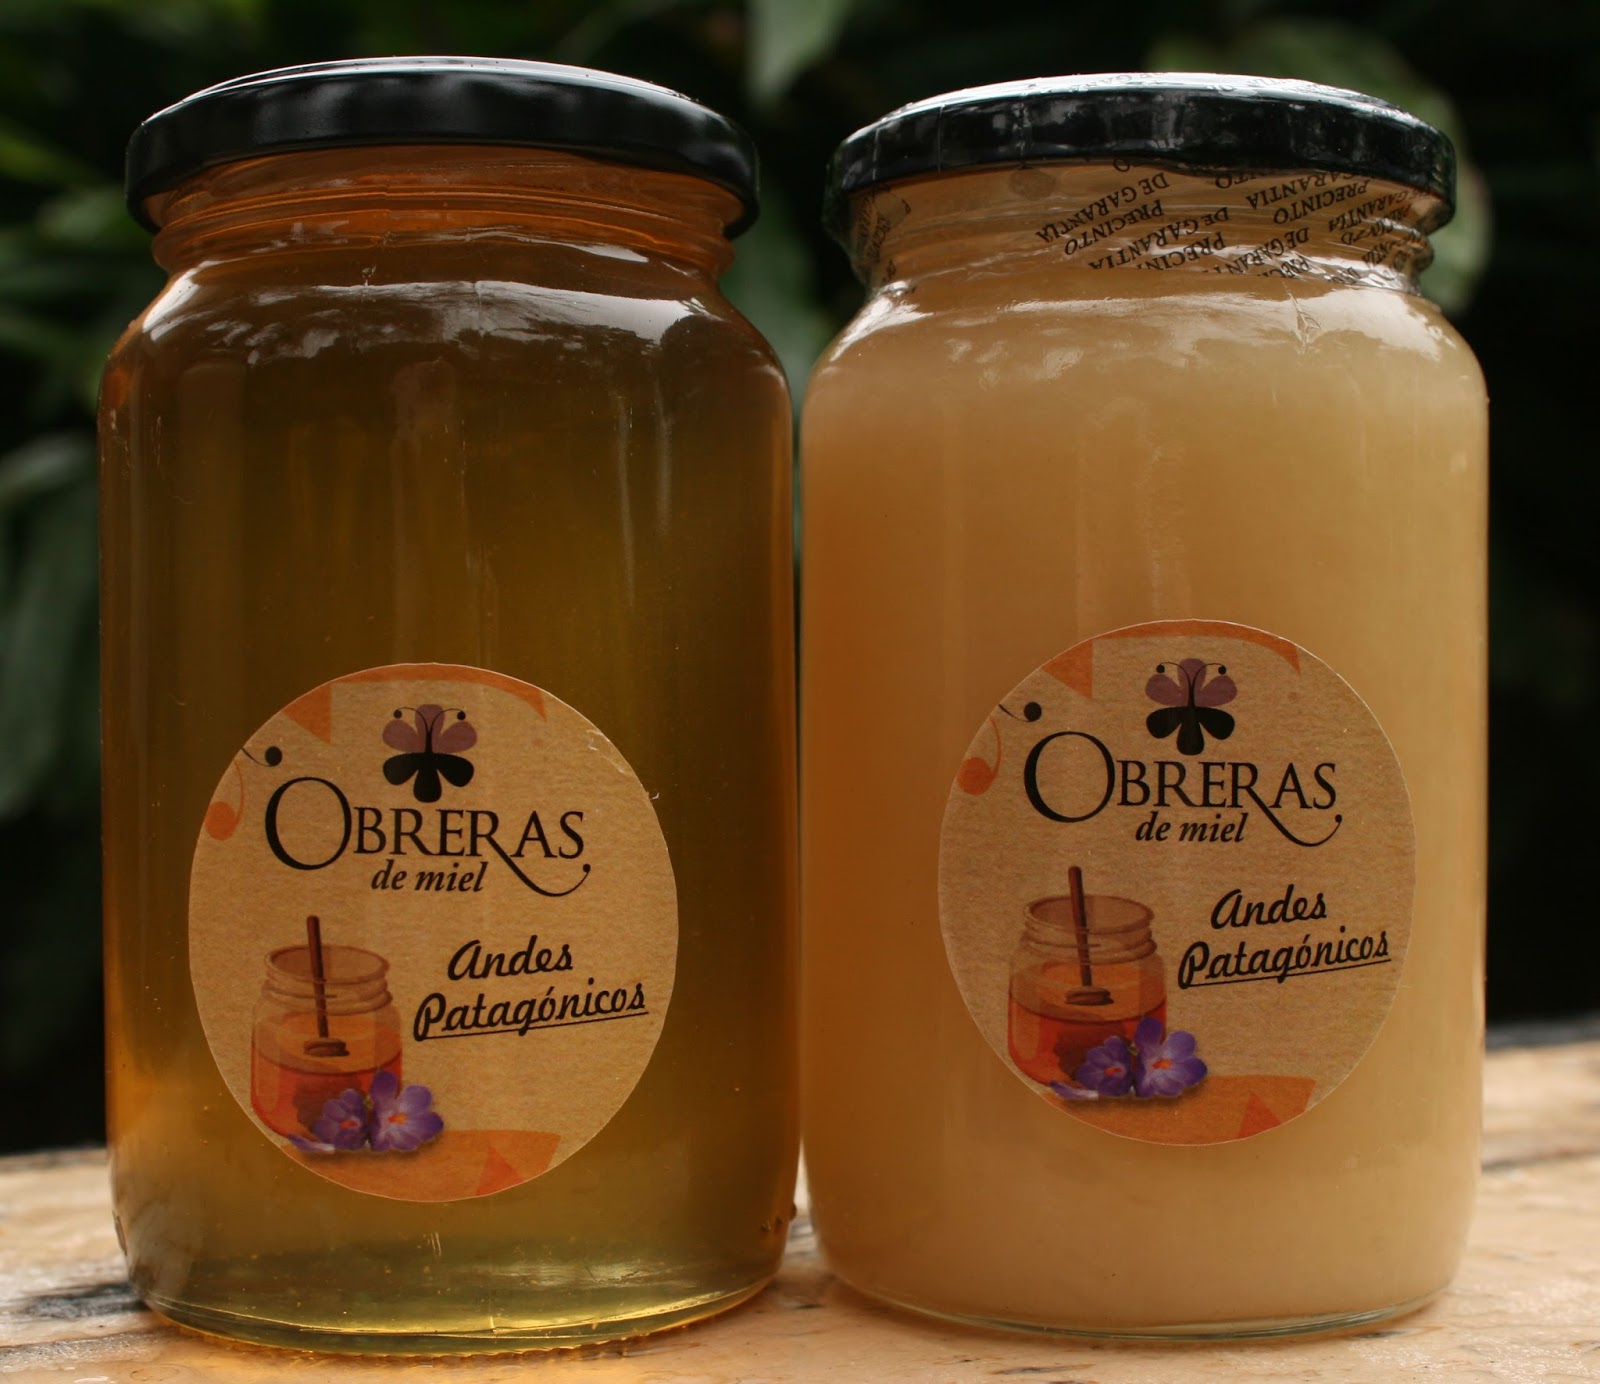 Obreras de miel